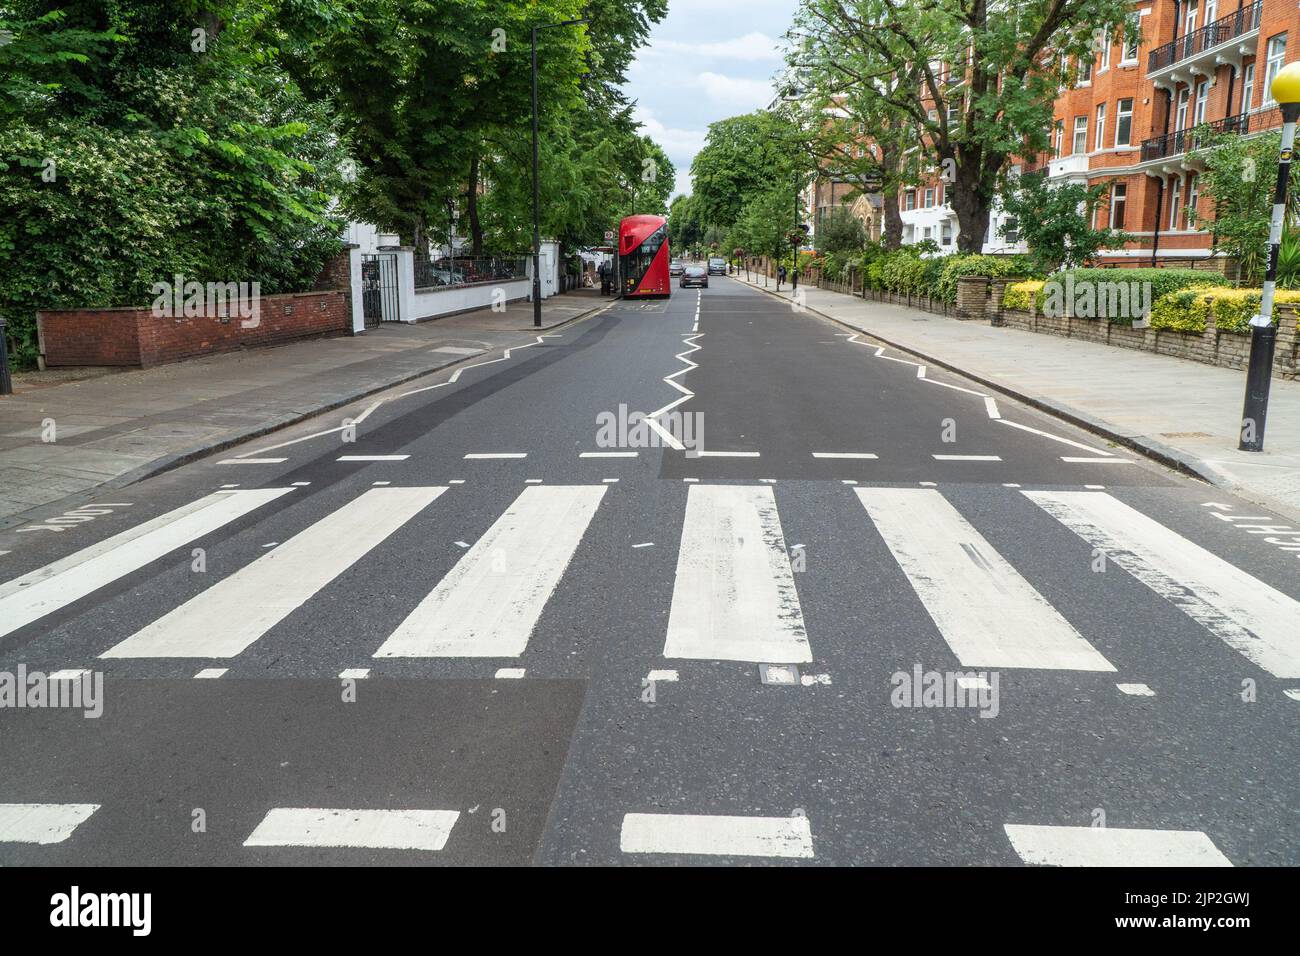 Abbey Road Zebra Crossing como lo utilizó The Beatles para su famosa portada de 1969 Album 'Abbey Road' Foto de stock